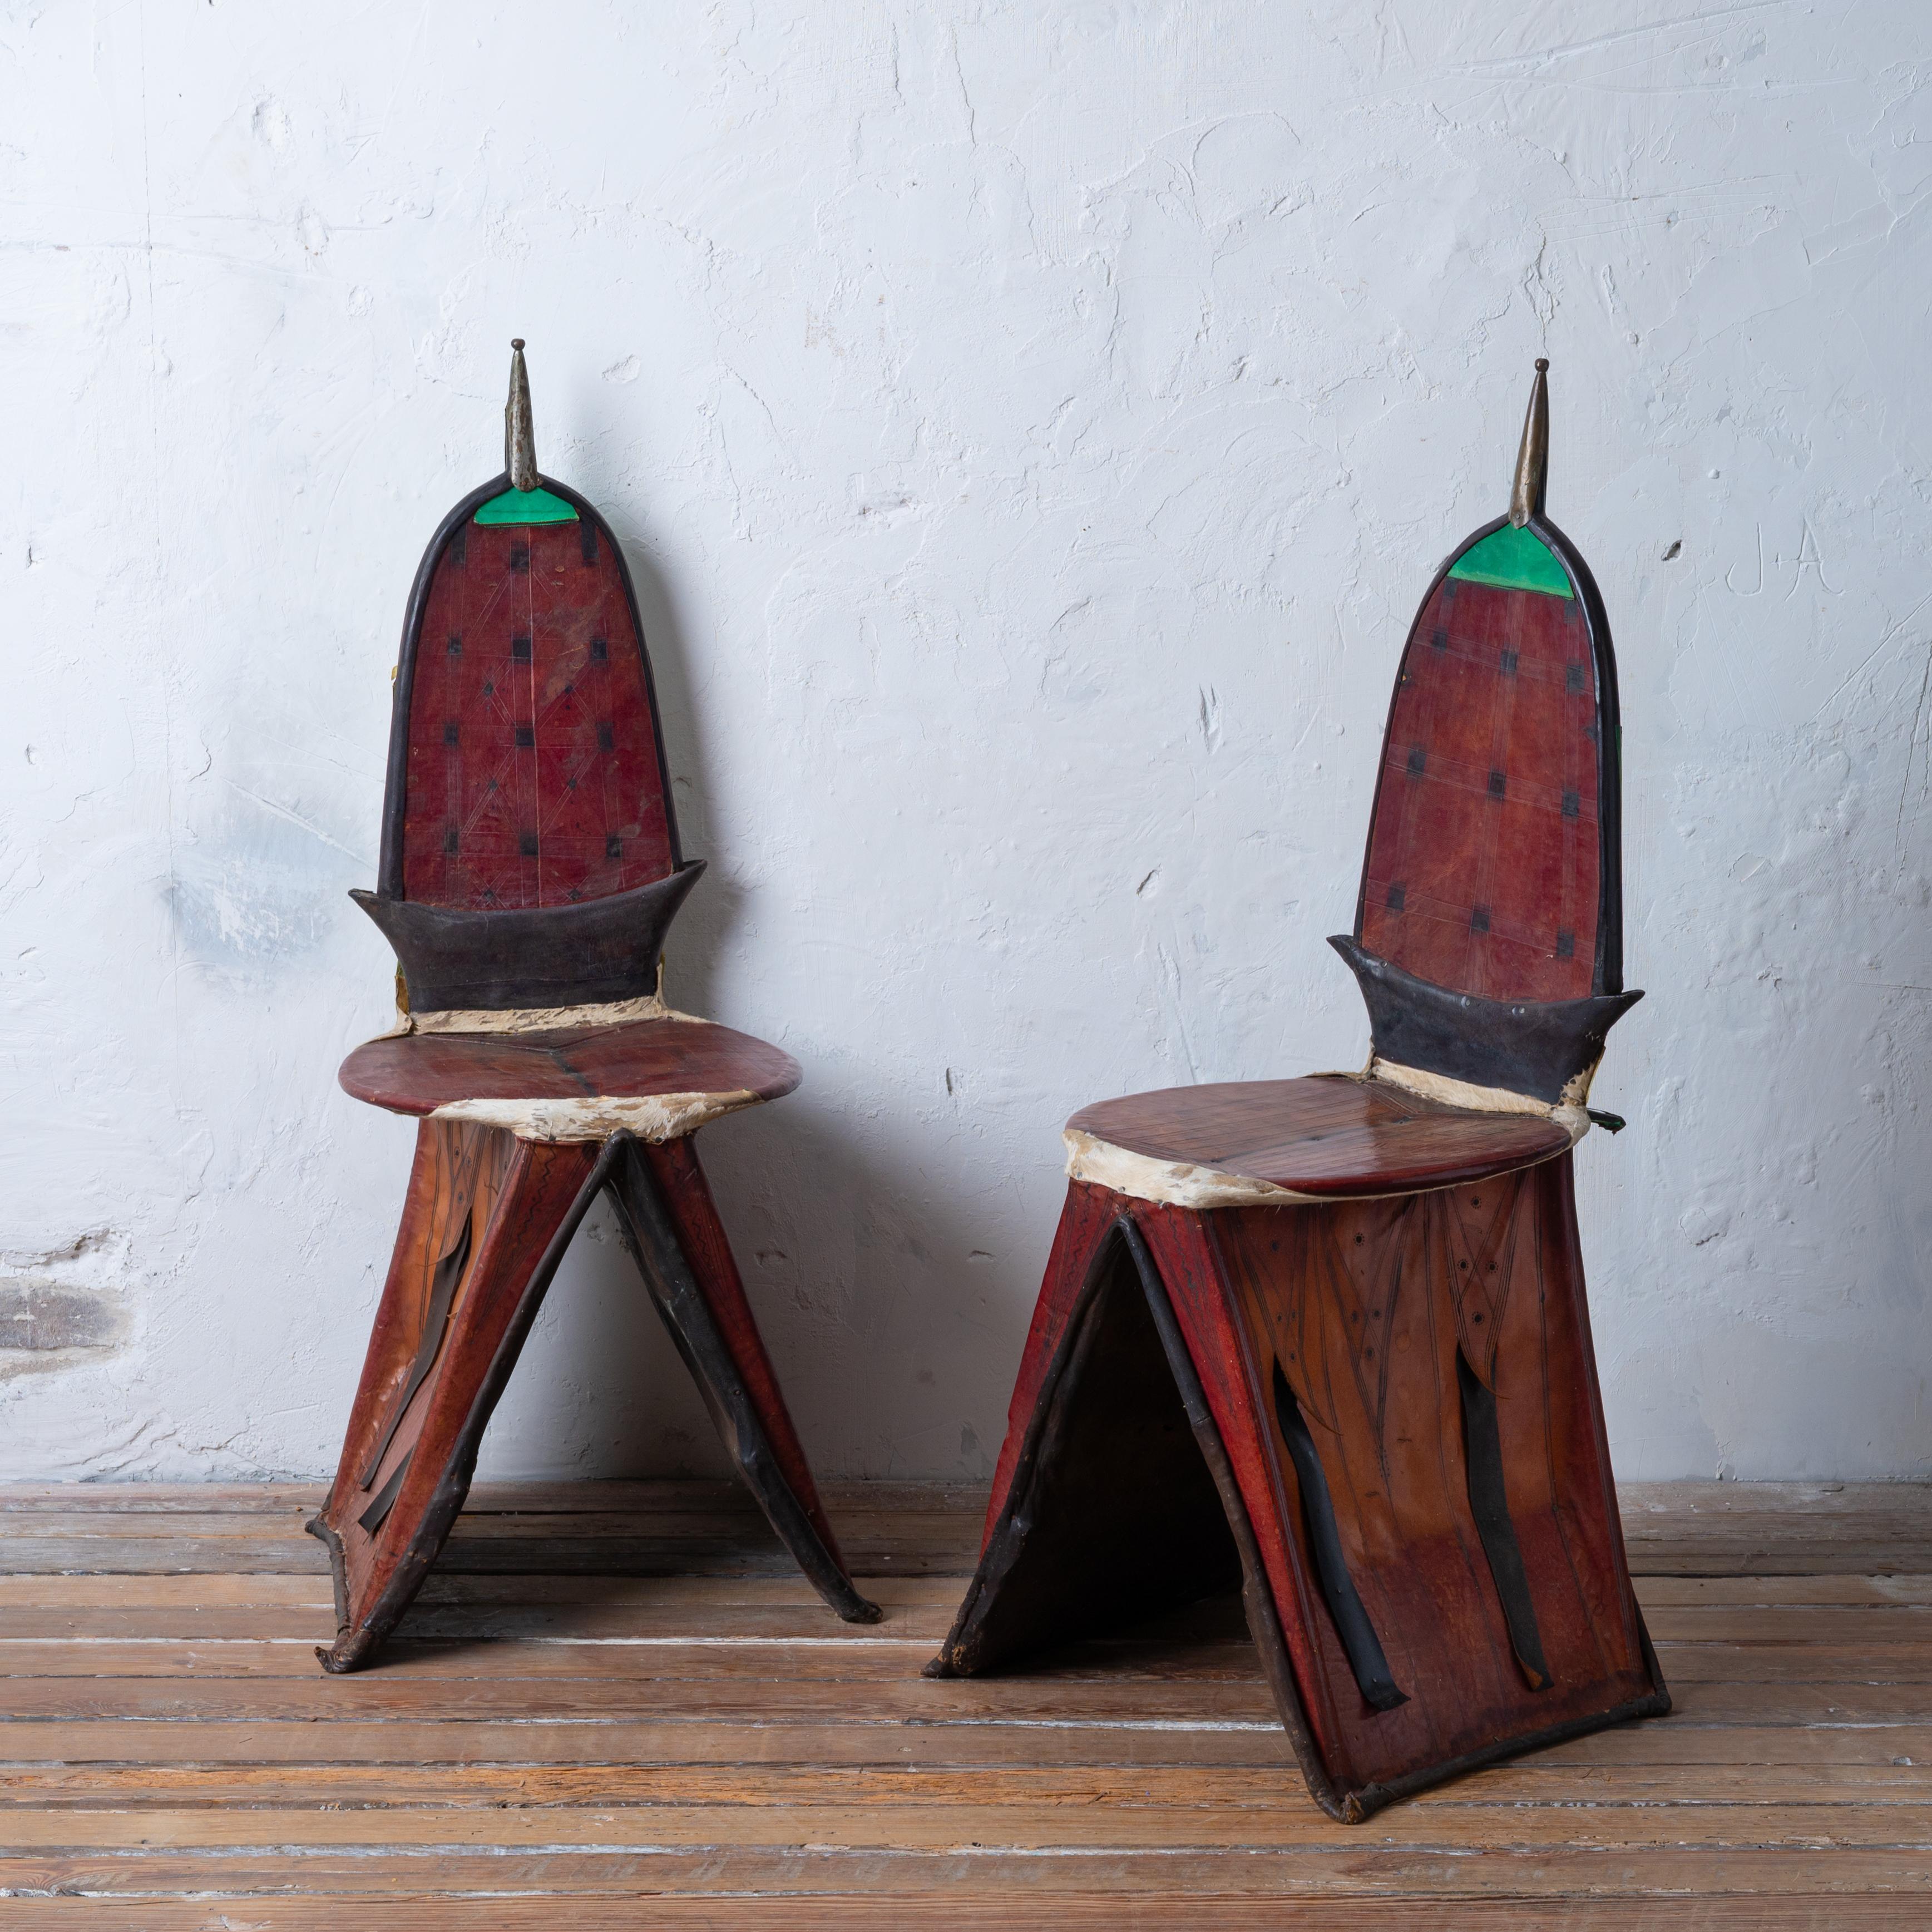 Paire de chaises à selle de chameau touareg berbère Tamzak, Afrique du Niger, début du 20e siècle.

Ces chaises de selle sont construites à partir de solides cadres en bois dur enveloppés de divers cuirs et peaux avec des outils et des teintures et